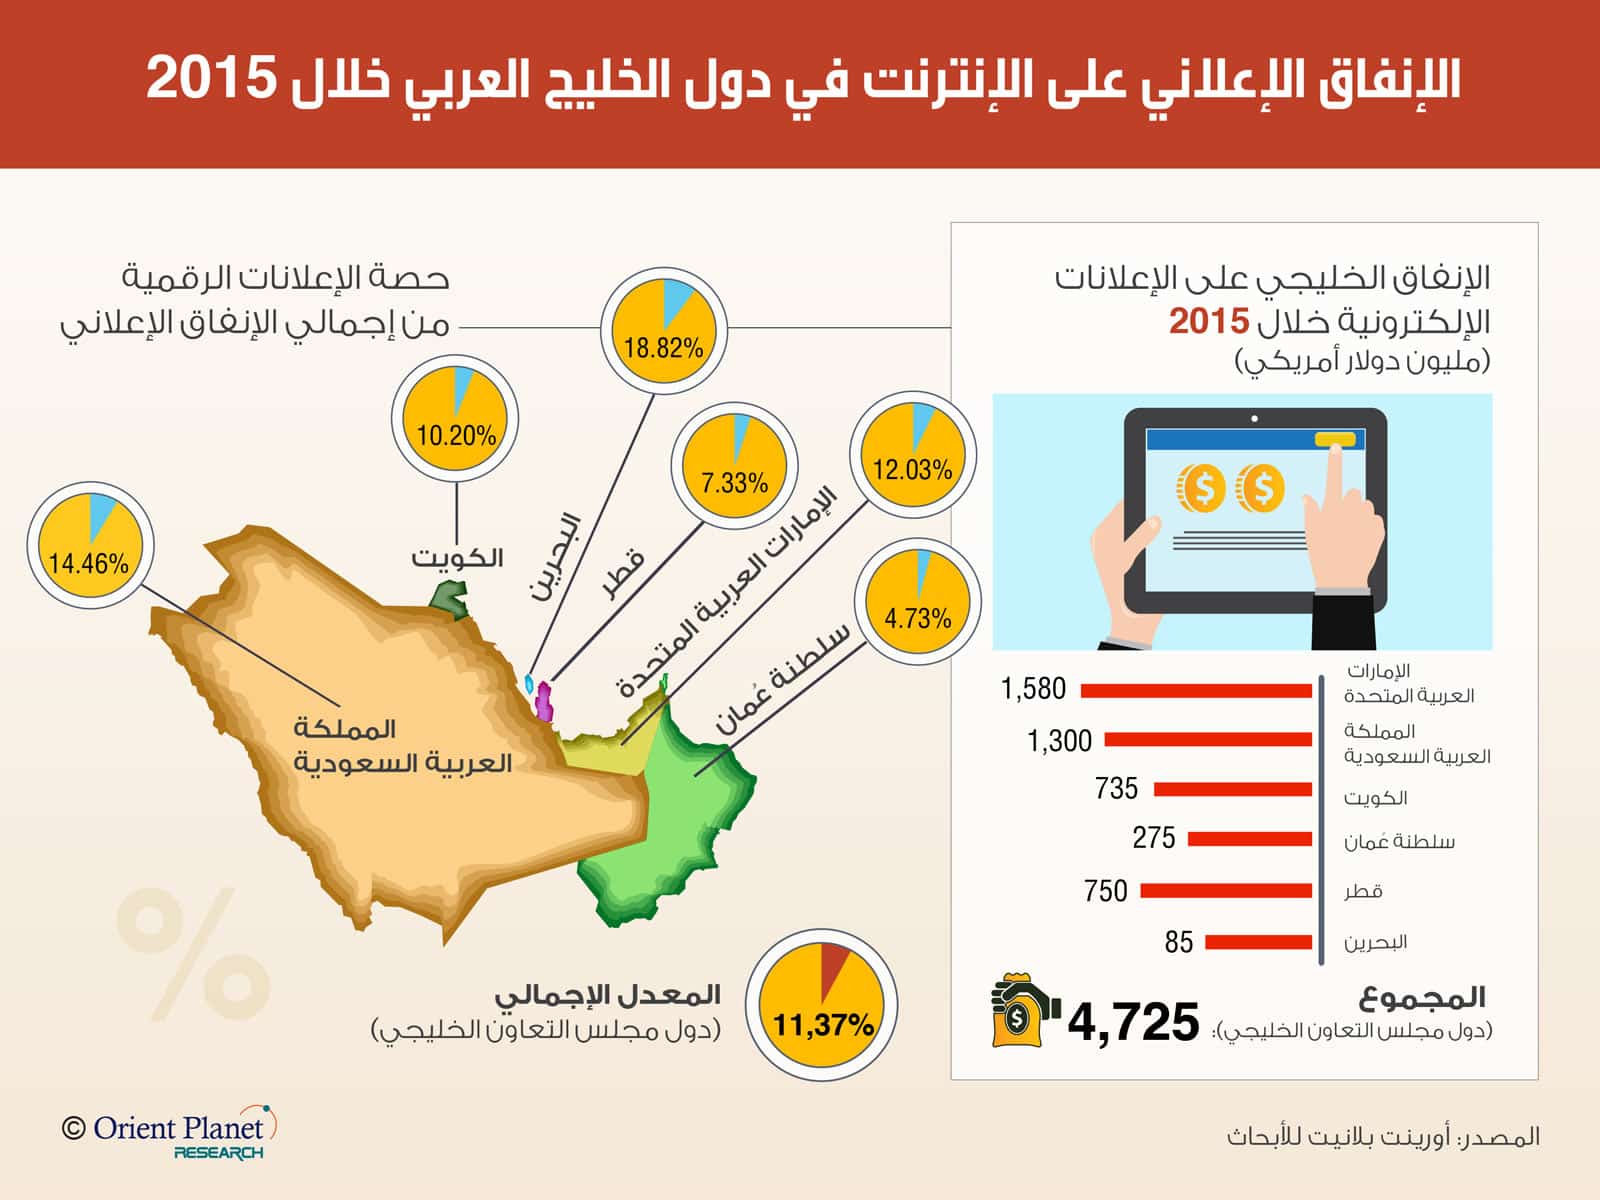 توقعات بنمو الإنفاق في سوق الإعلان الإلكتروني الخليجي خلال 2017 بنسبة 20%